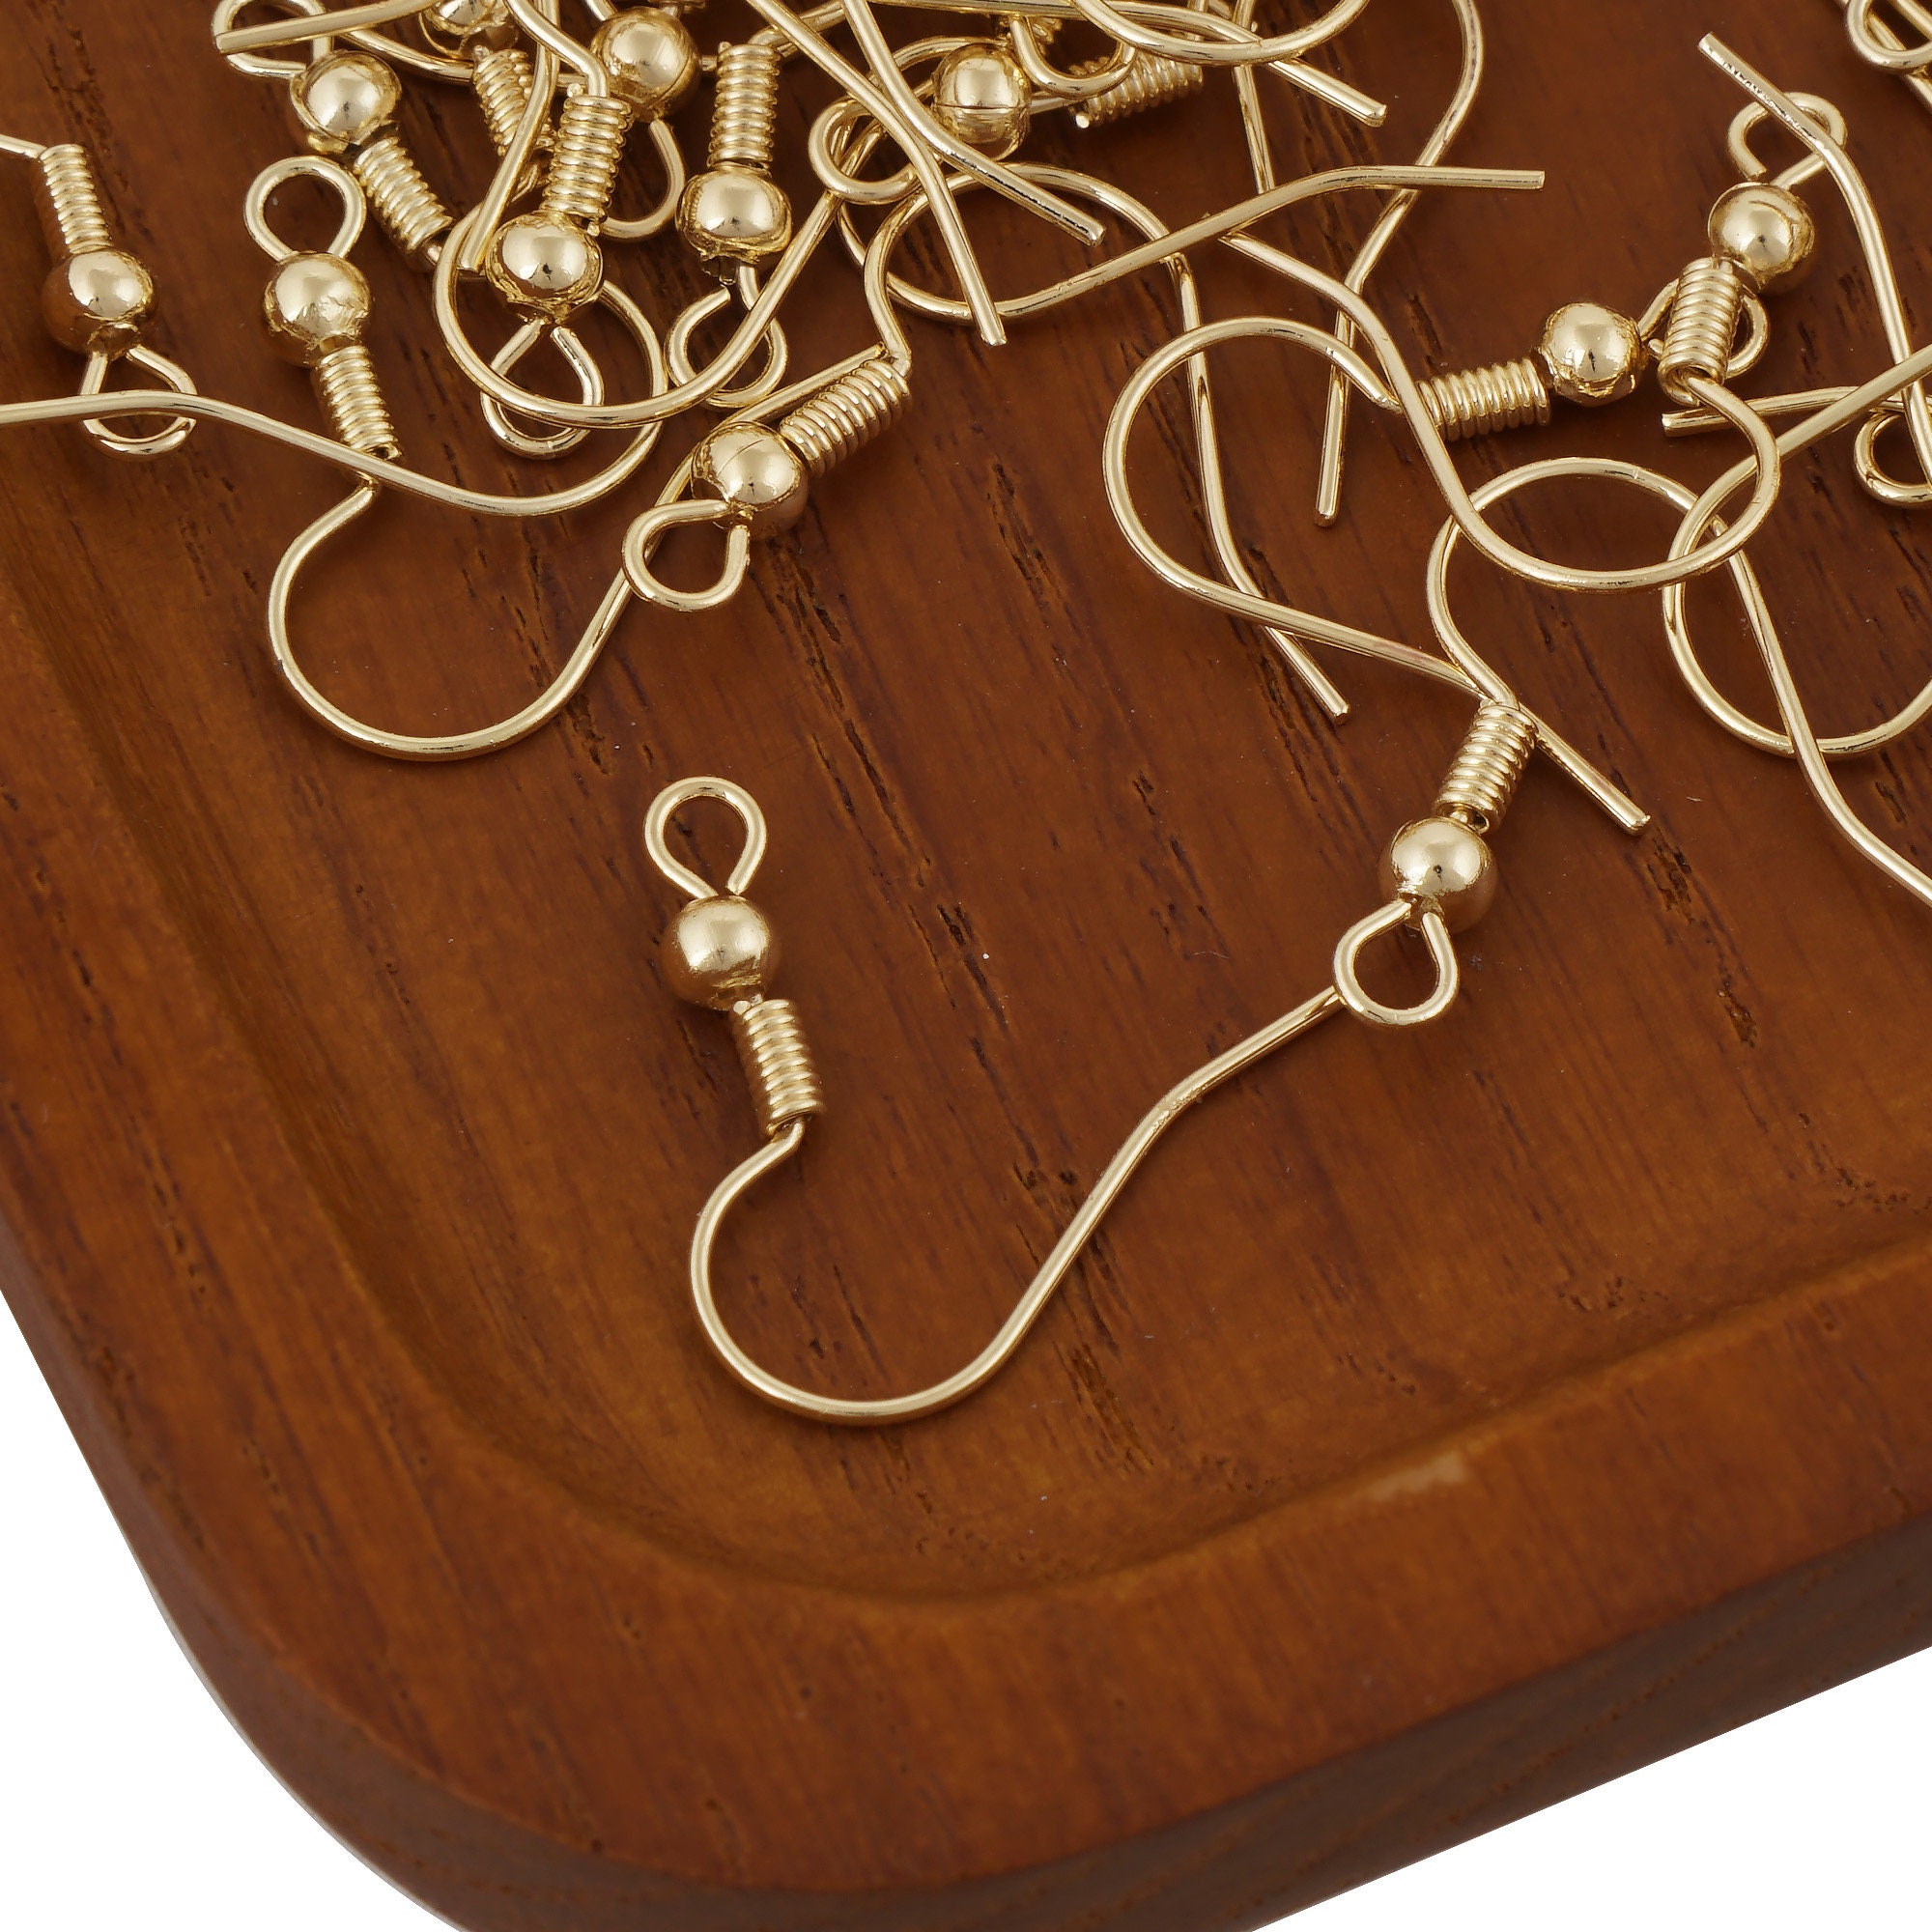 14K Gold Filled Earring Hooks, Gold Filled Earring Hooks for